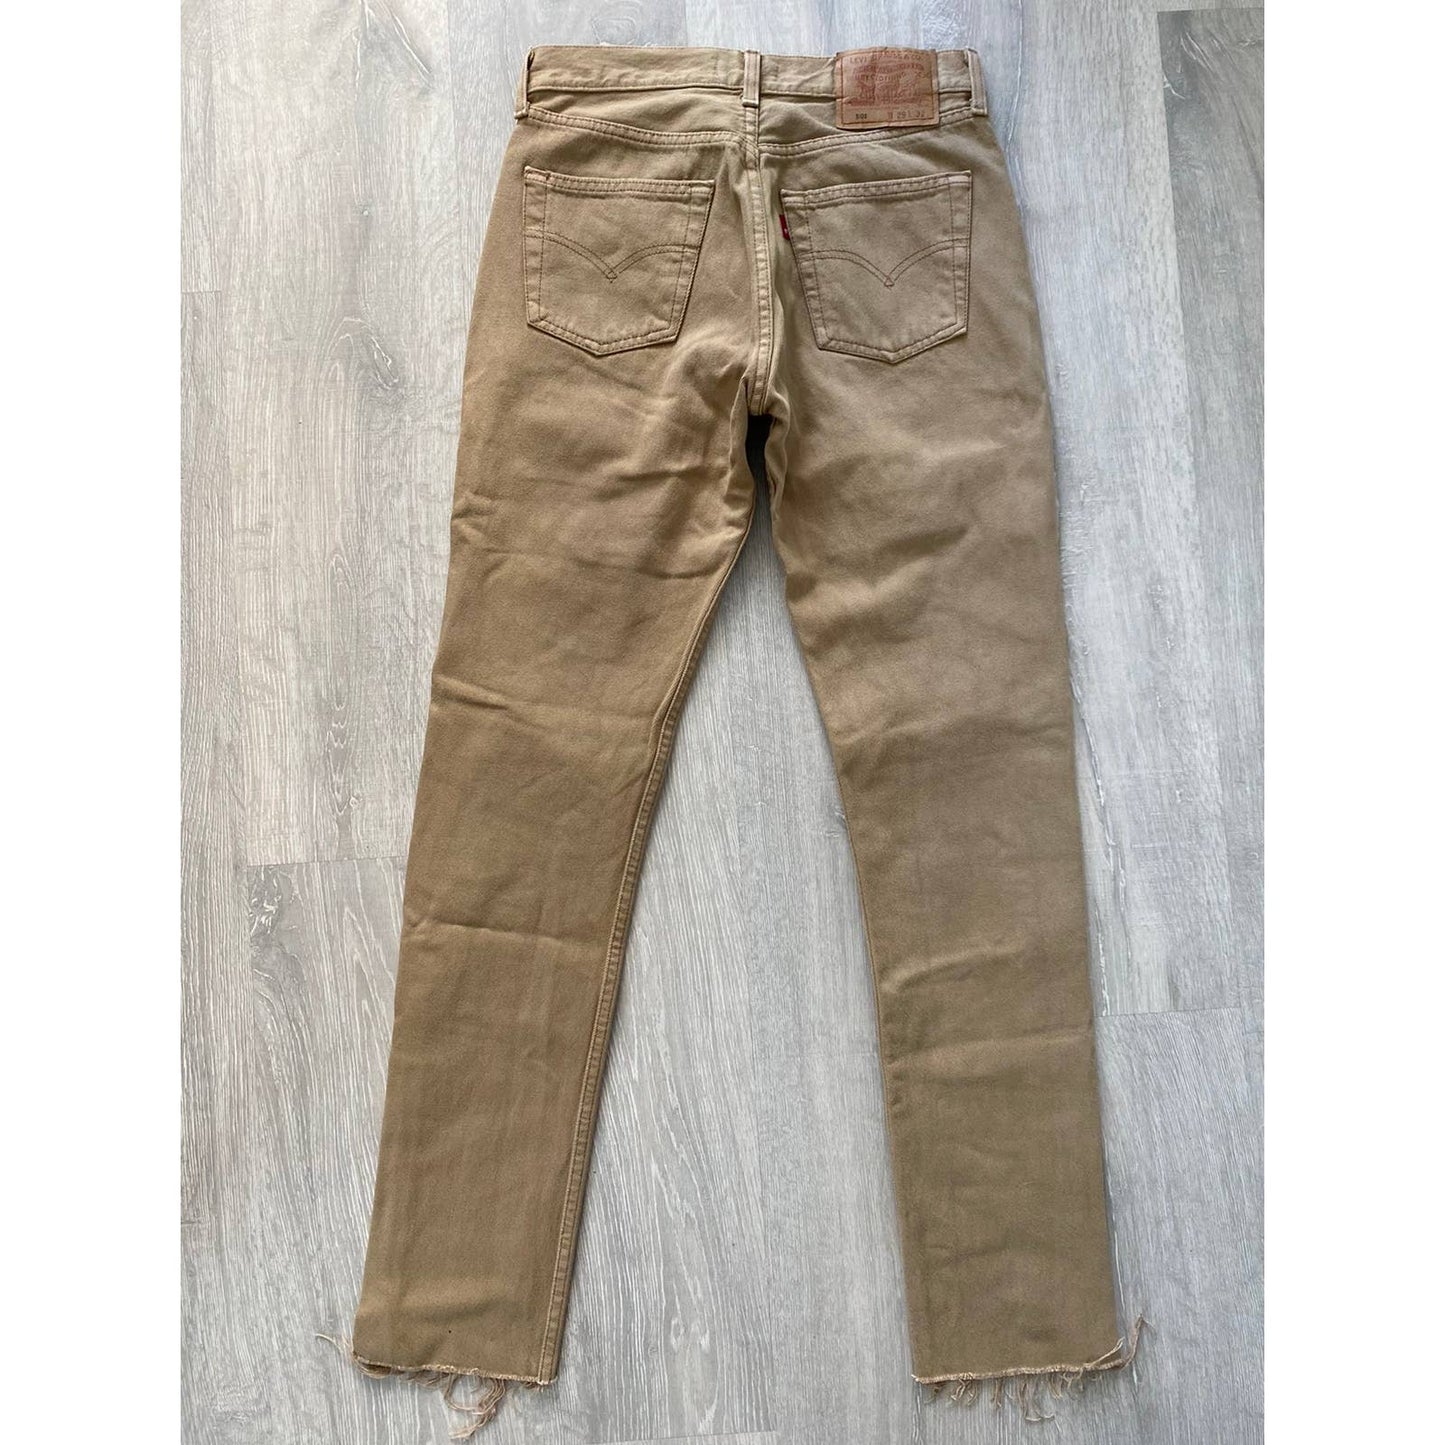 90s Levi’s 501 vintage beige jeans denim pants